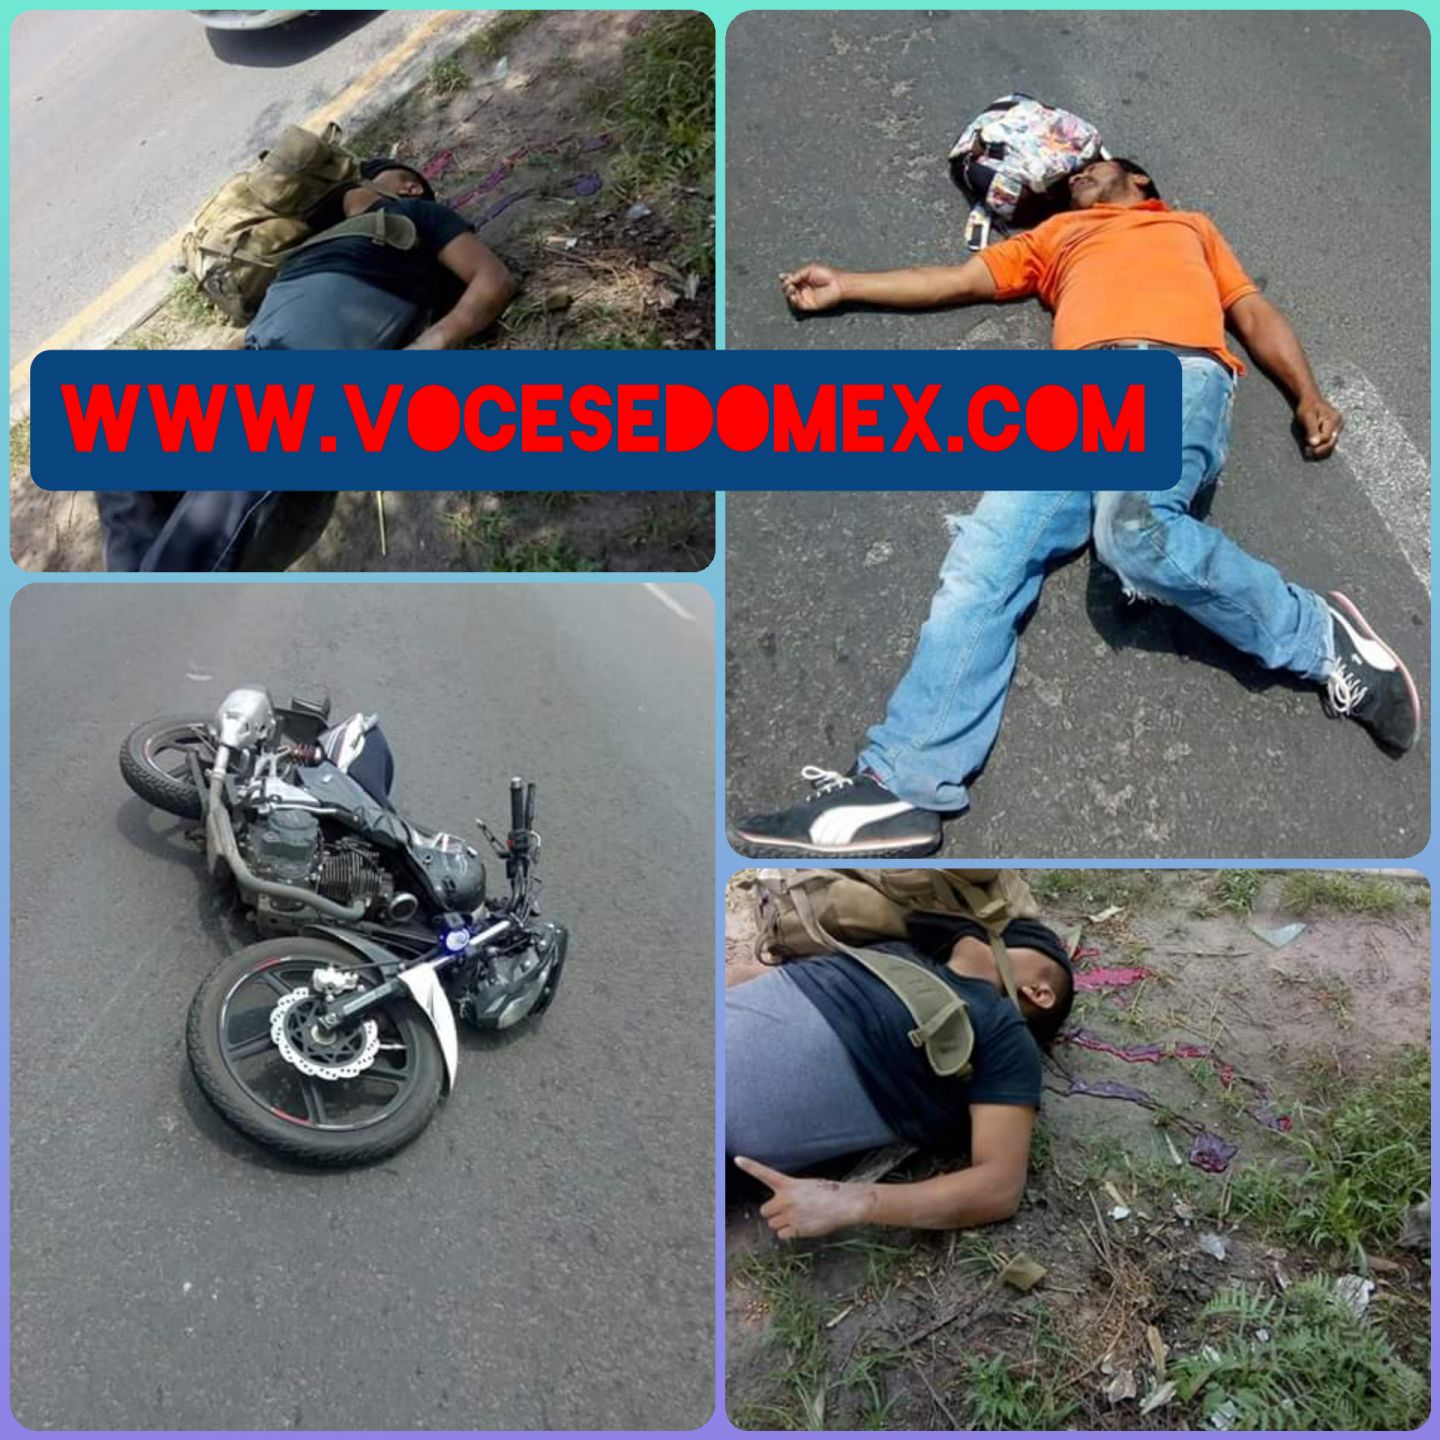 Un muerto y un herido al accidentarse con una motocicleta en la carretera Texcoco Los Reyes la Paz